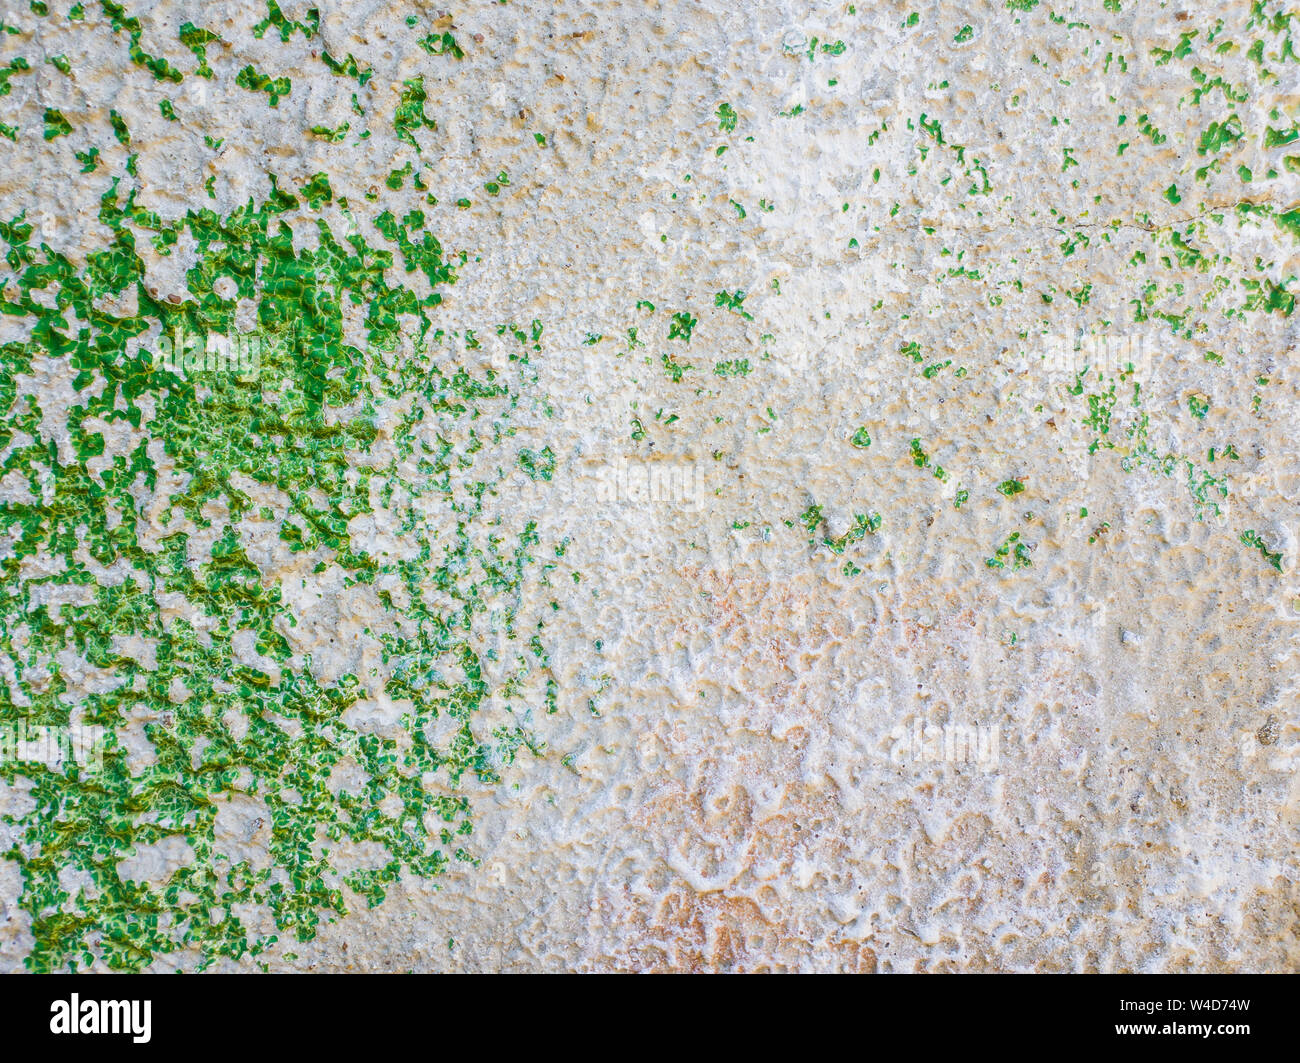 Abstrakte Fläche als grüne Farbe eine Betonwand Hintergrund. Alte grungy, verwitterte lackiert Baustruktur. Risse, dreckige Textur w Stockfoto